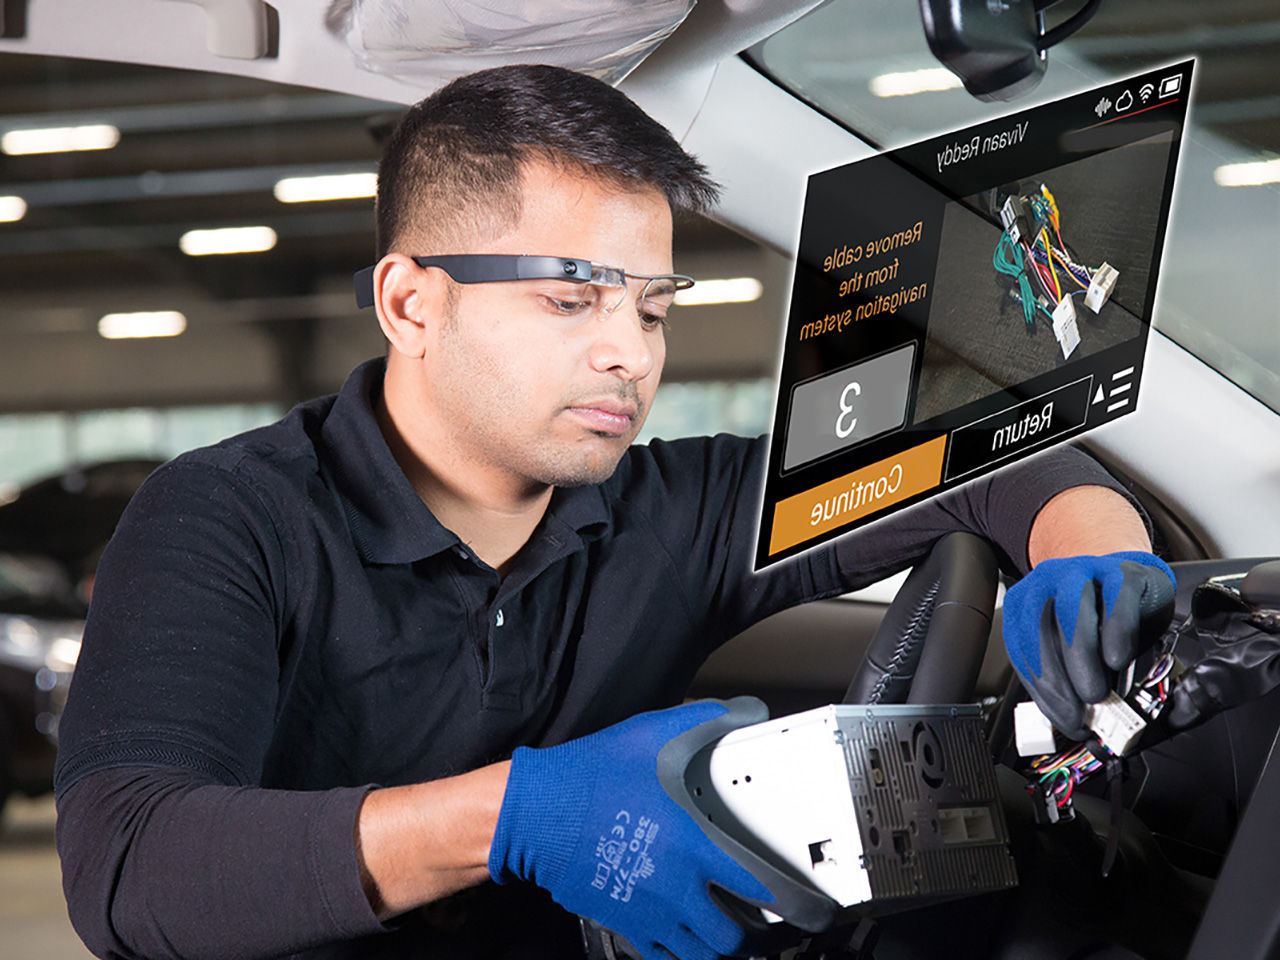 Механик выполняет работы на автомобиле, используя технологию дополненной реальности